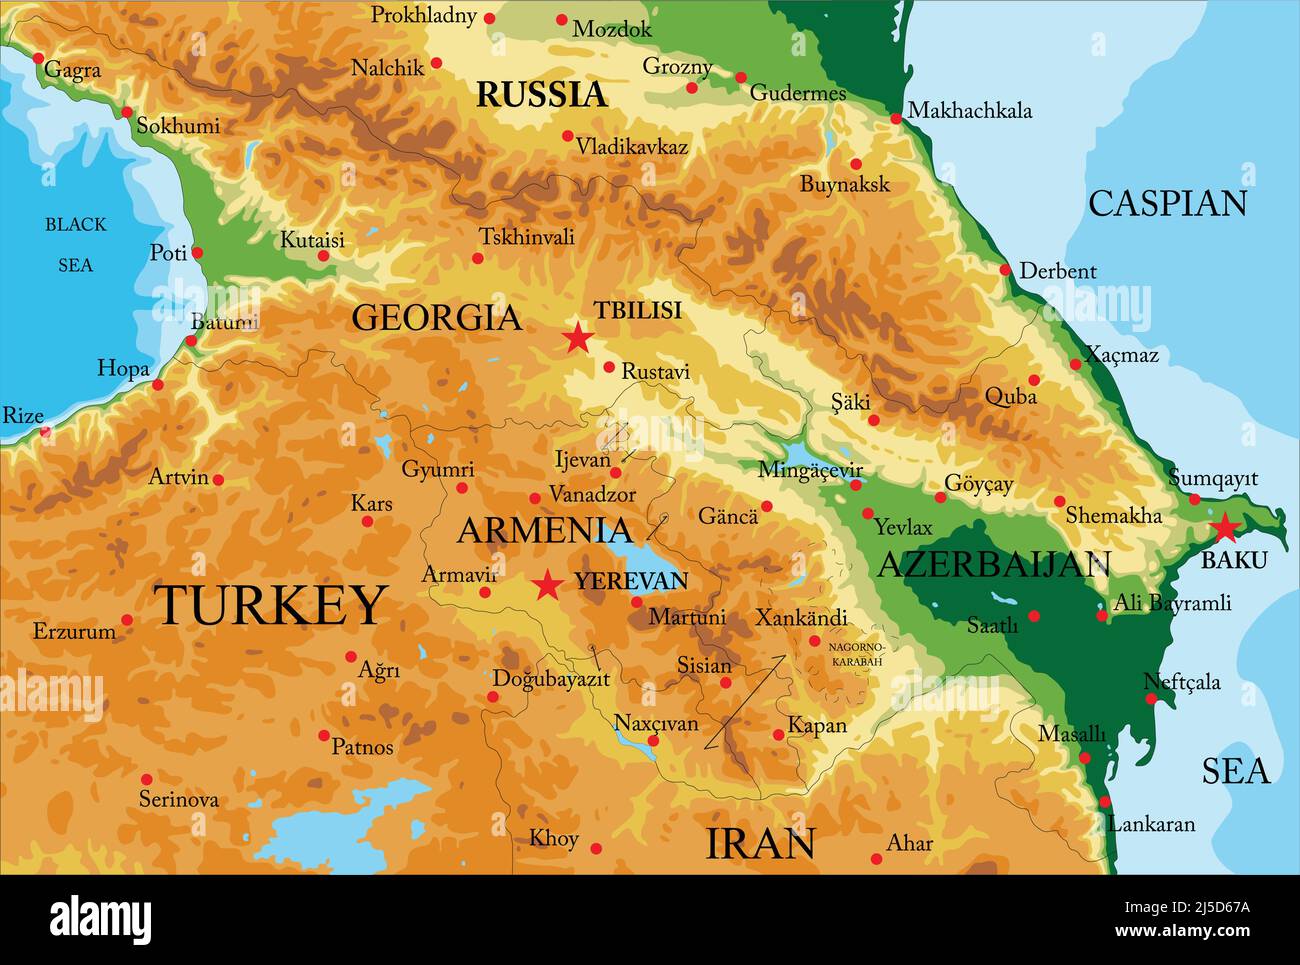 Caucasus Countries Map